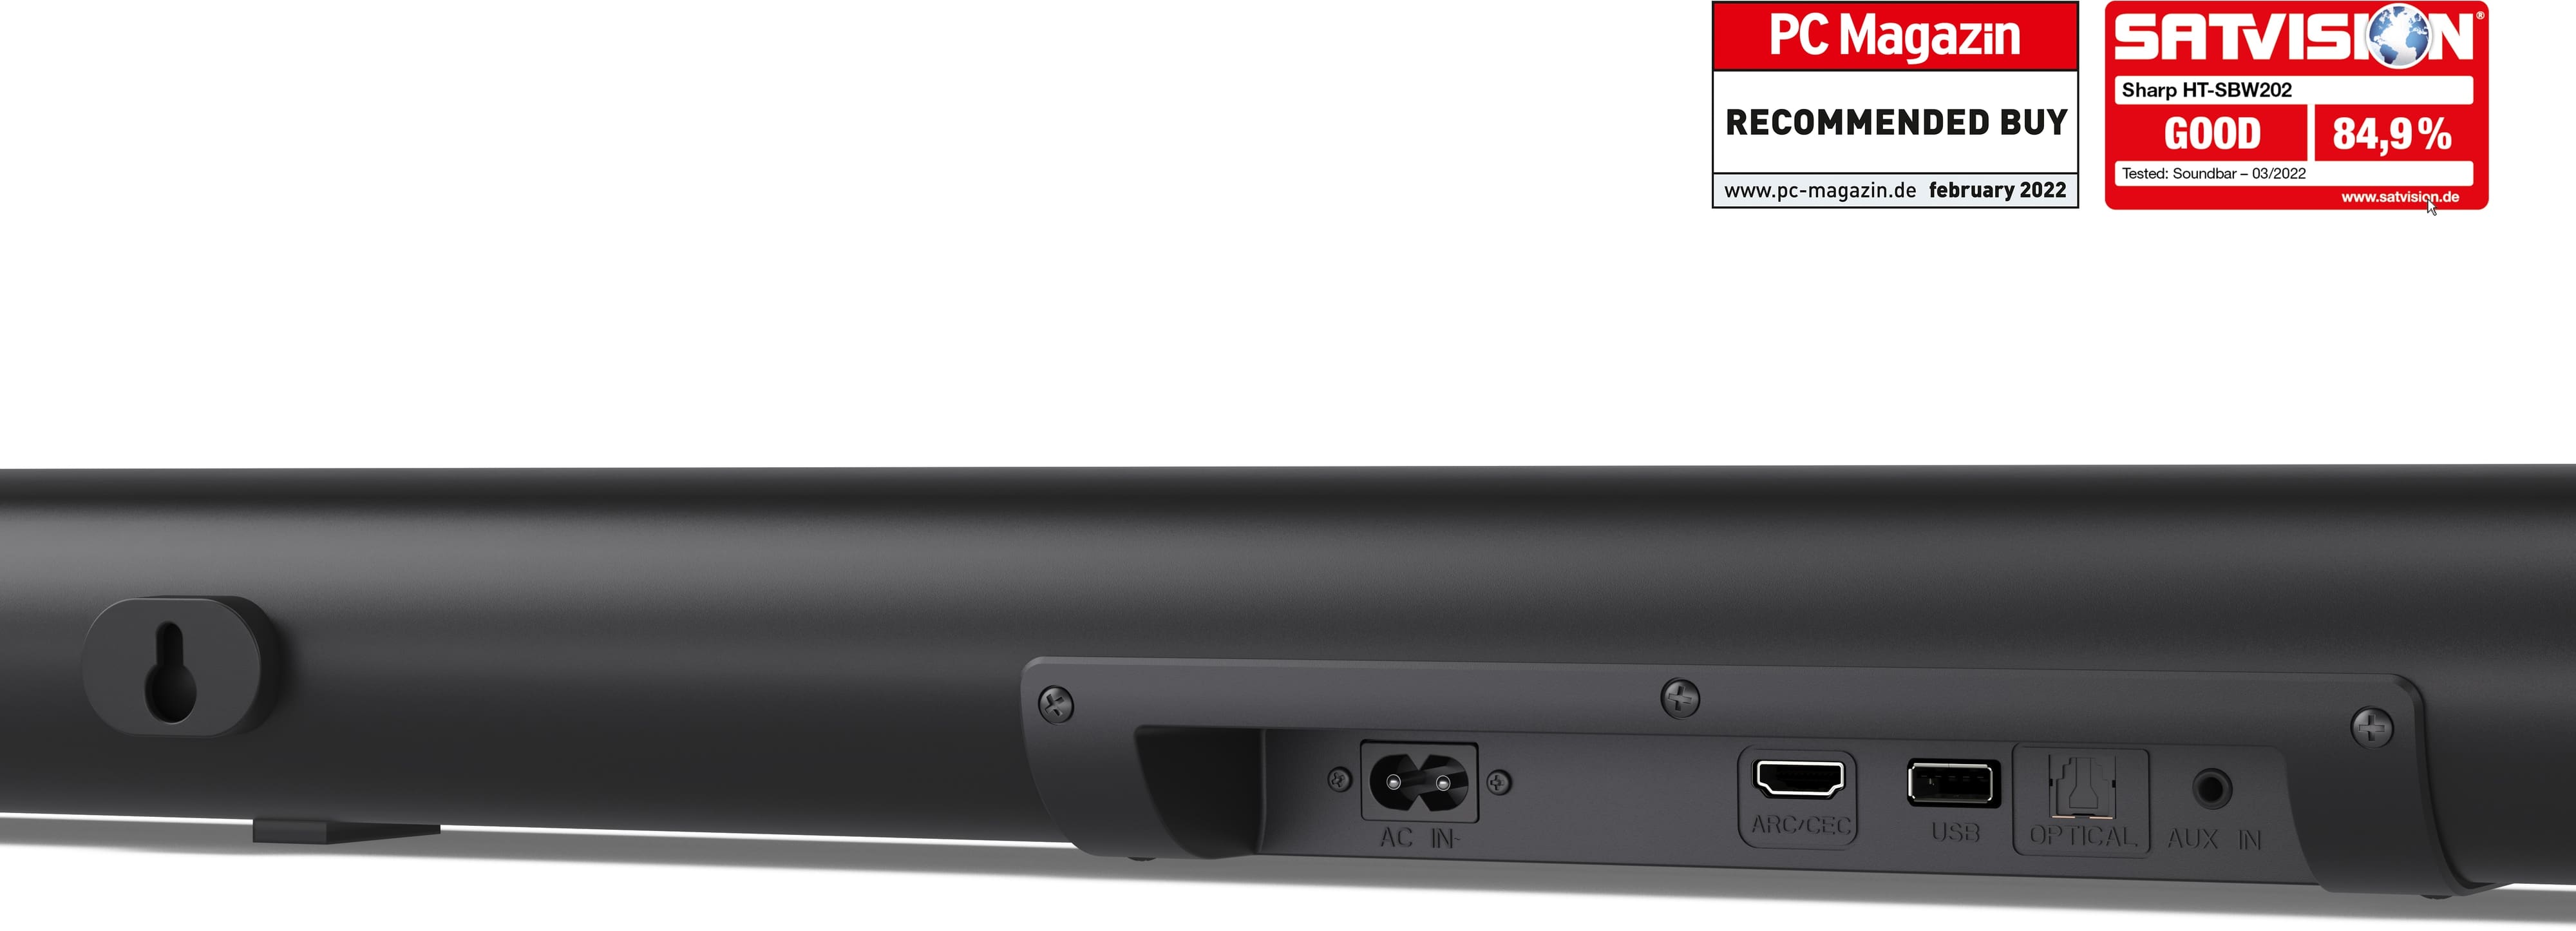 SHARP Soundbar-System HT-SBW202, Subwoofer, Bluetooth, HDMI, 200 W